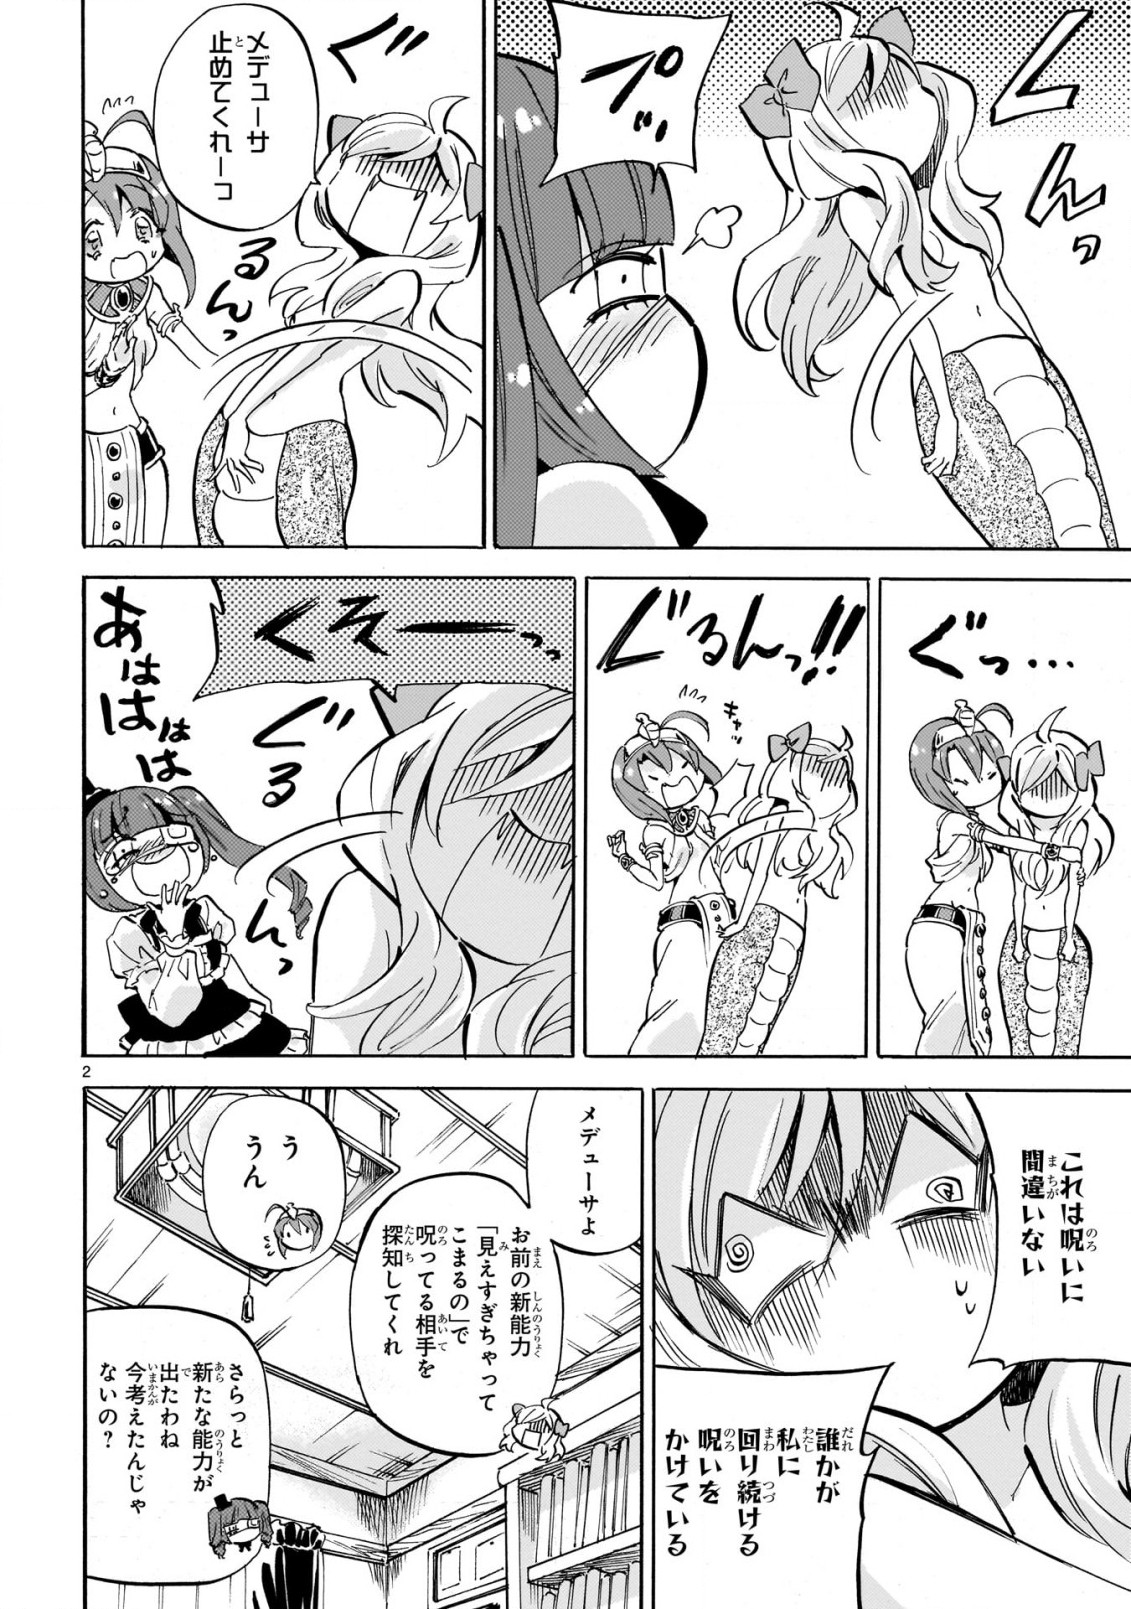 Jashin-chan Dropkick - Chapter 226 - Page 2